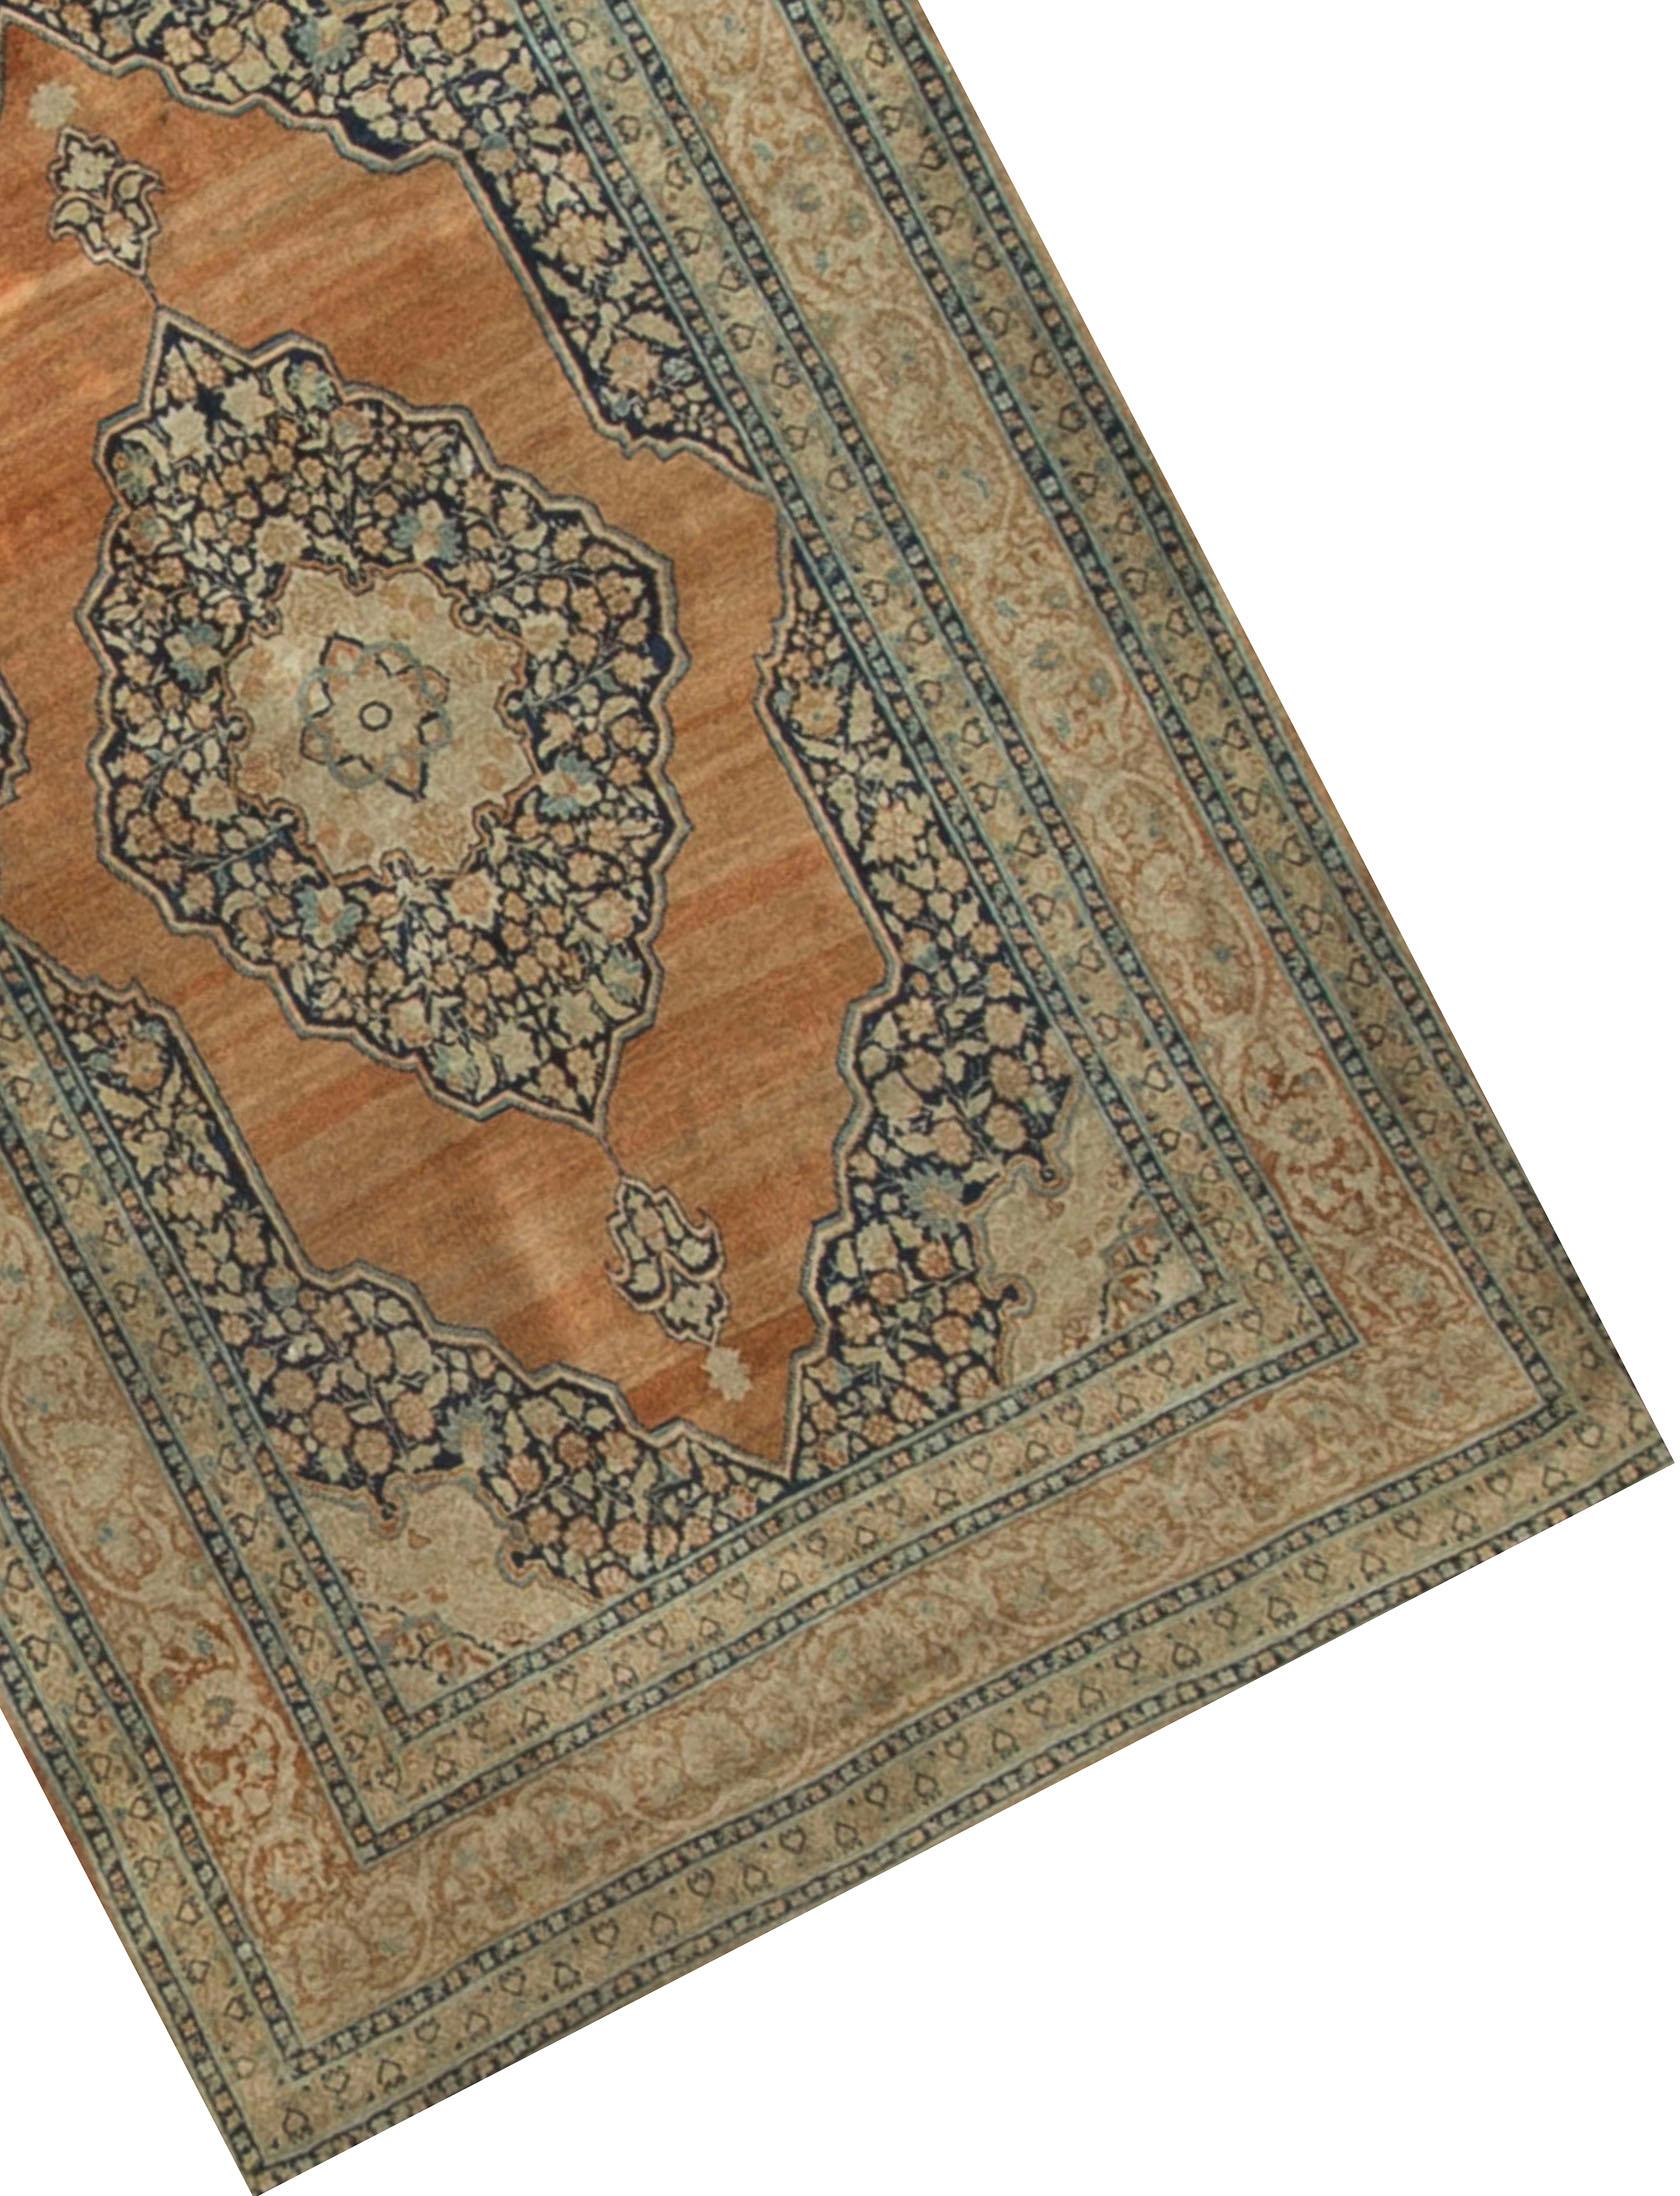 Tapis persan vintage Tabriz, circa 1930. Un tapis persan vintage Tabriz en laine nouée à la main, au design traditionnel, qui convient parfaitement à une pièce moderne ou conventionnelle. Taille : 4'3 x 6'3